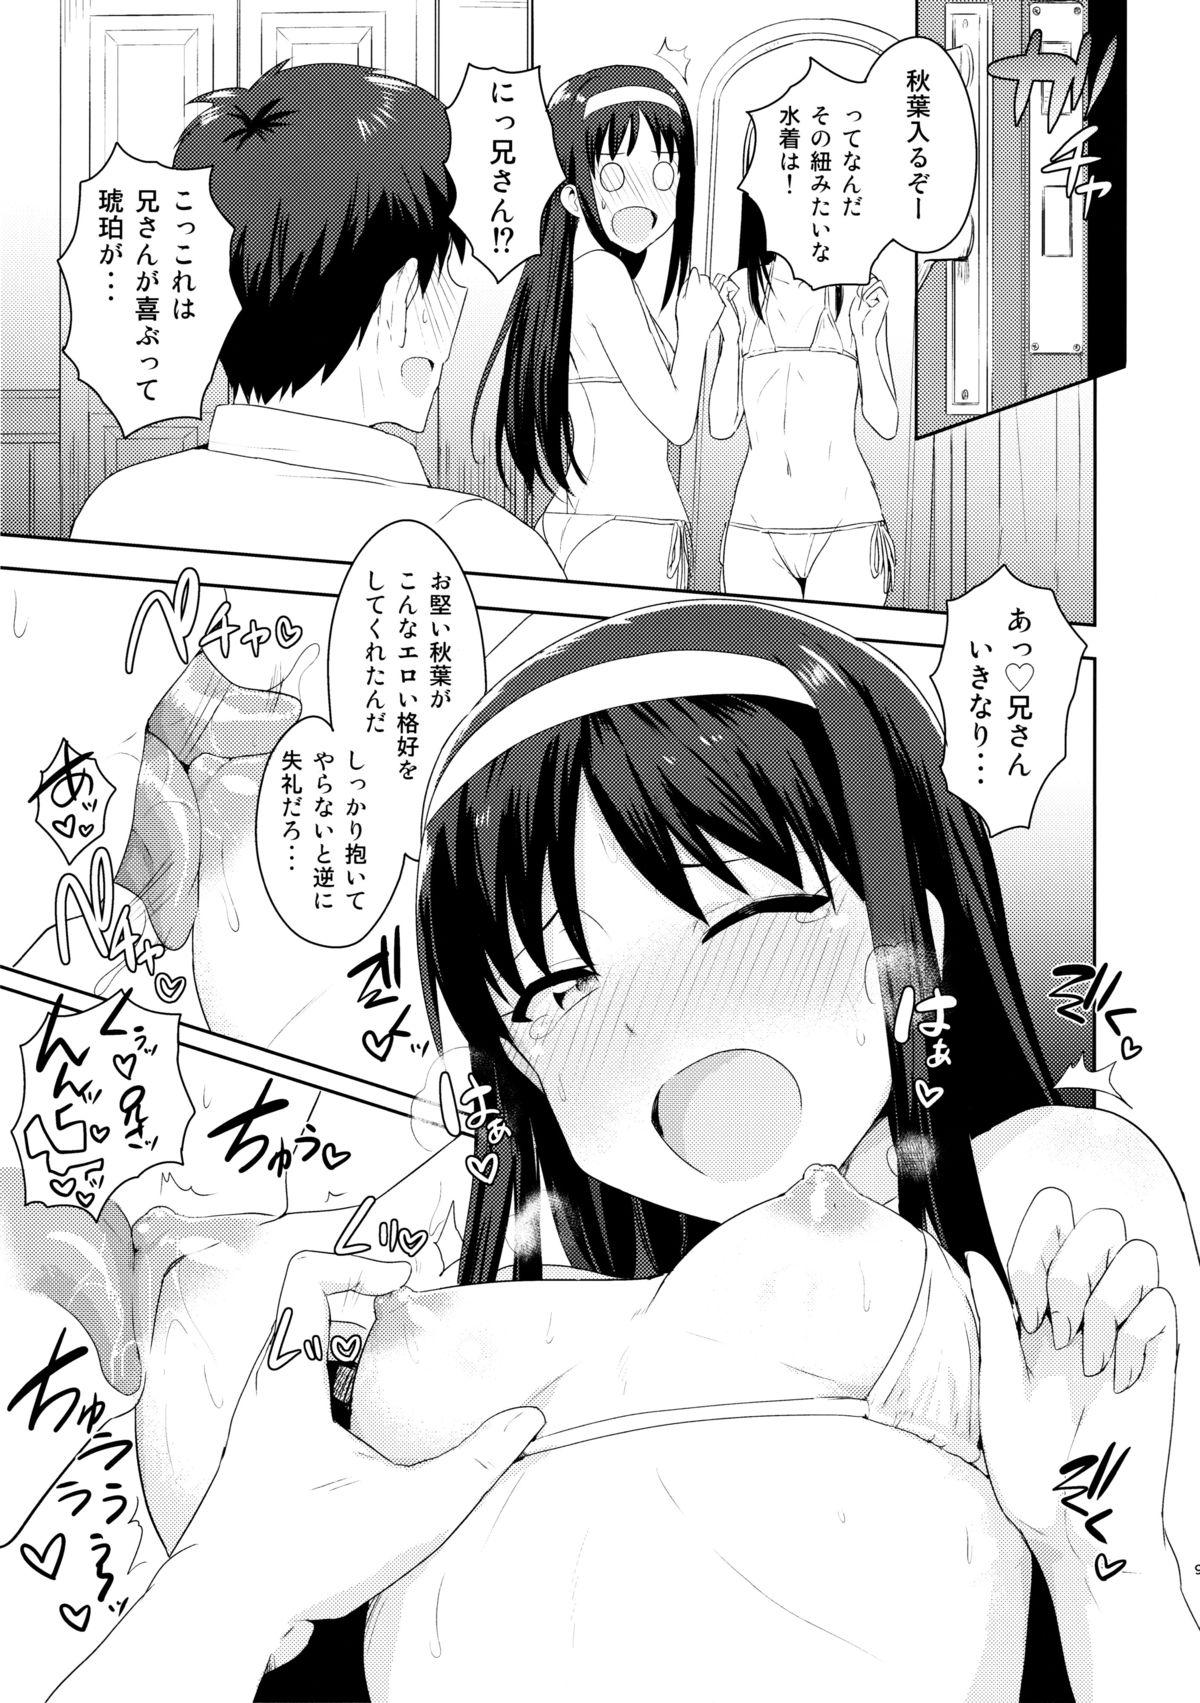 Licking Aru Hi no Futari All Chara Hen - Tsukihime Hardcore Porn Free - Page 8